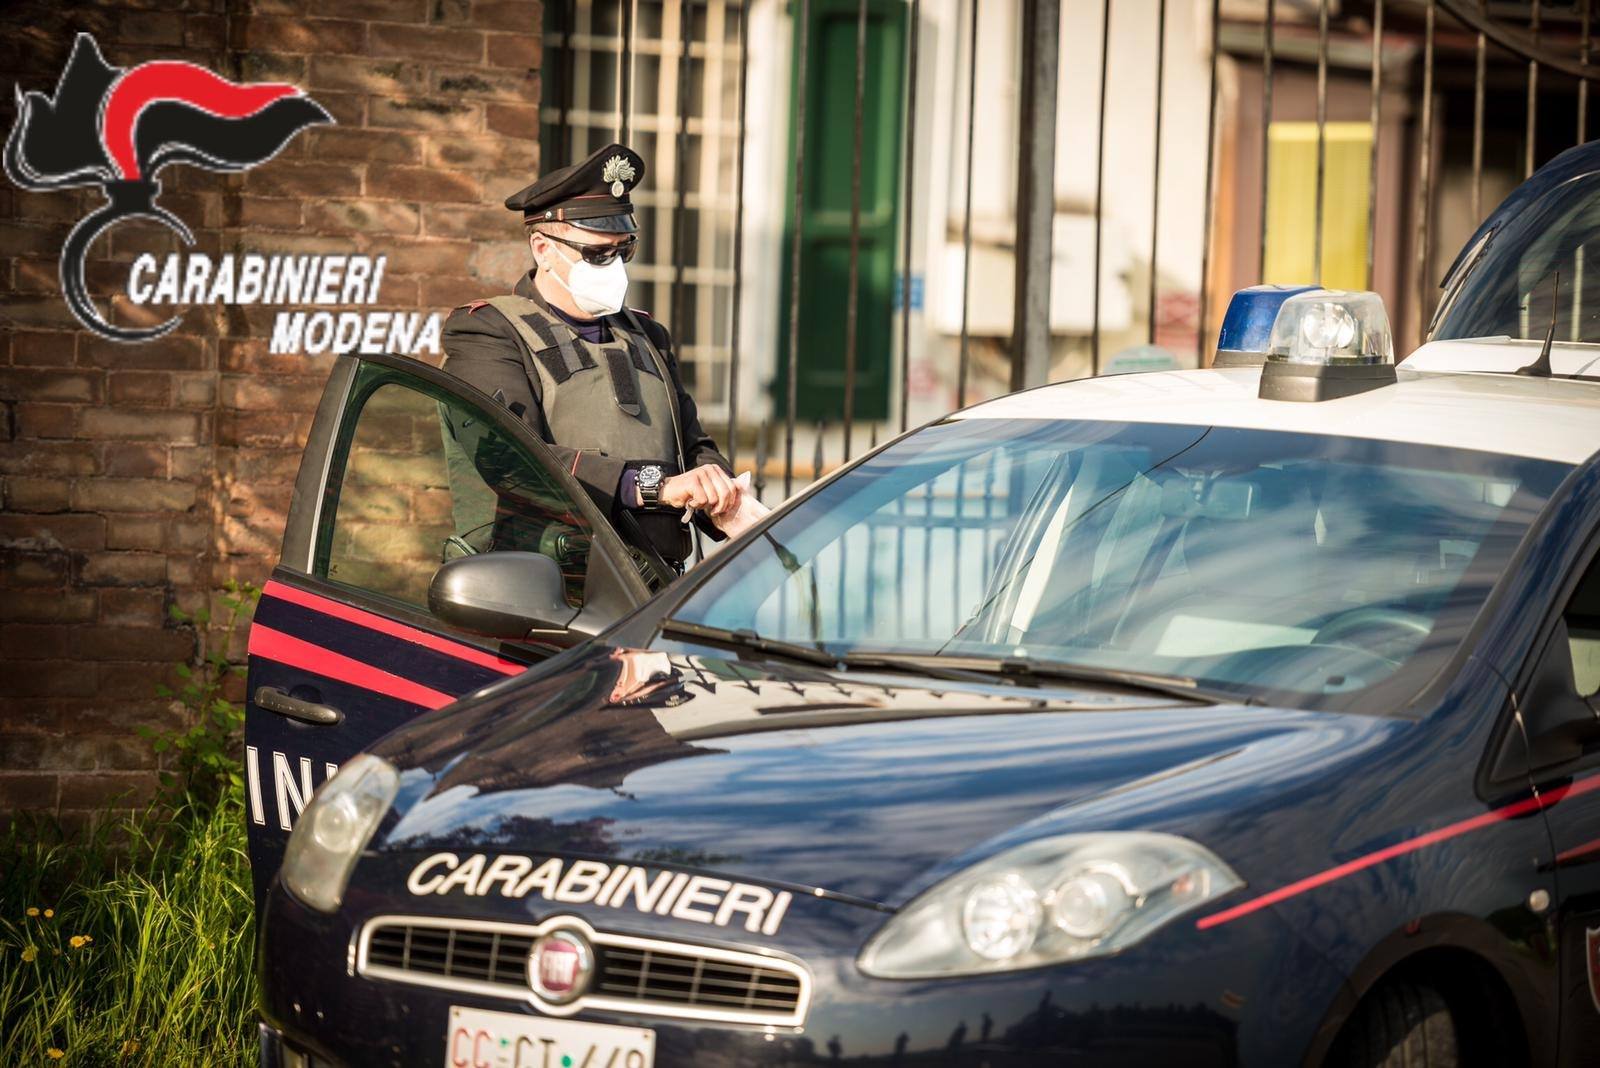  Furti sulle auto a Modena e Bologna, 3 arresti